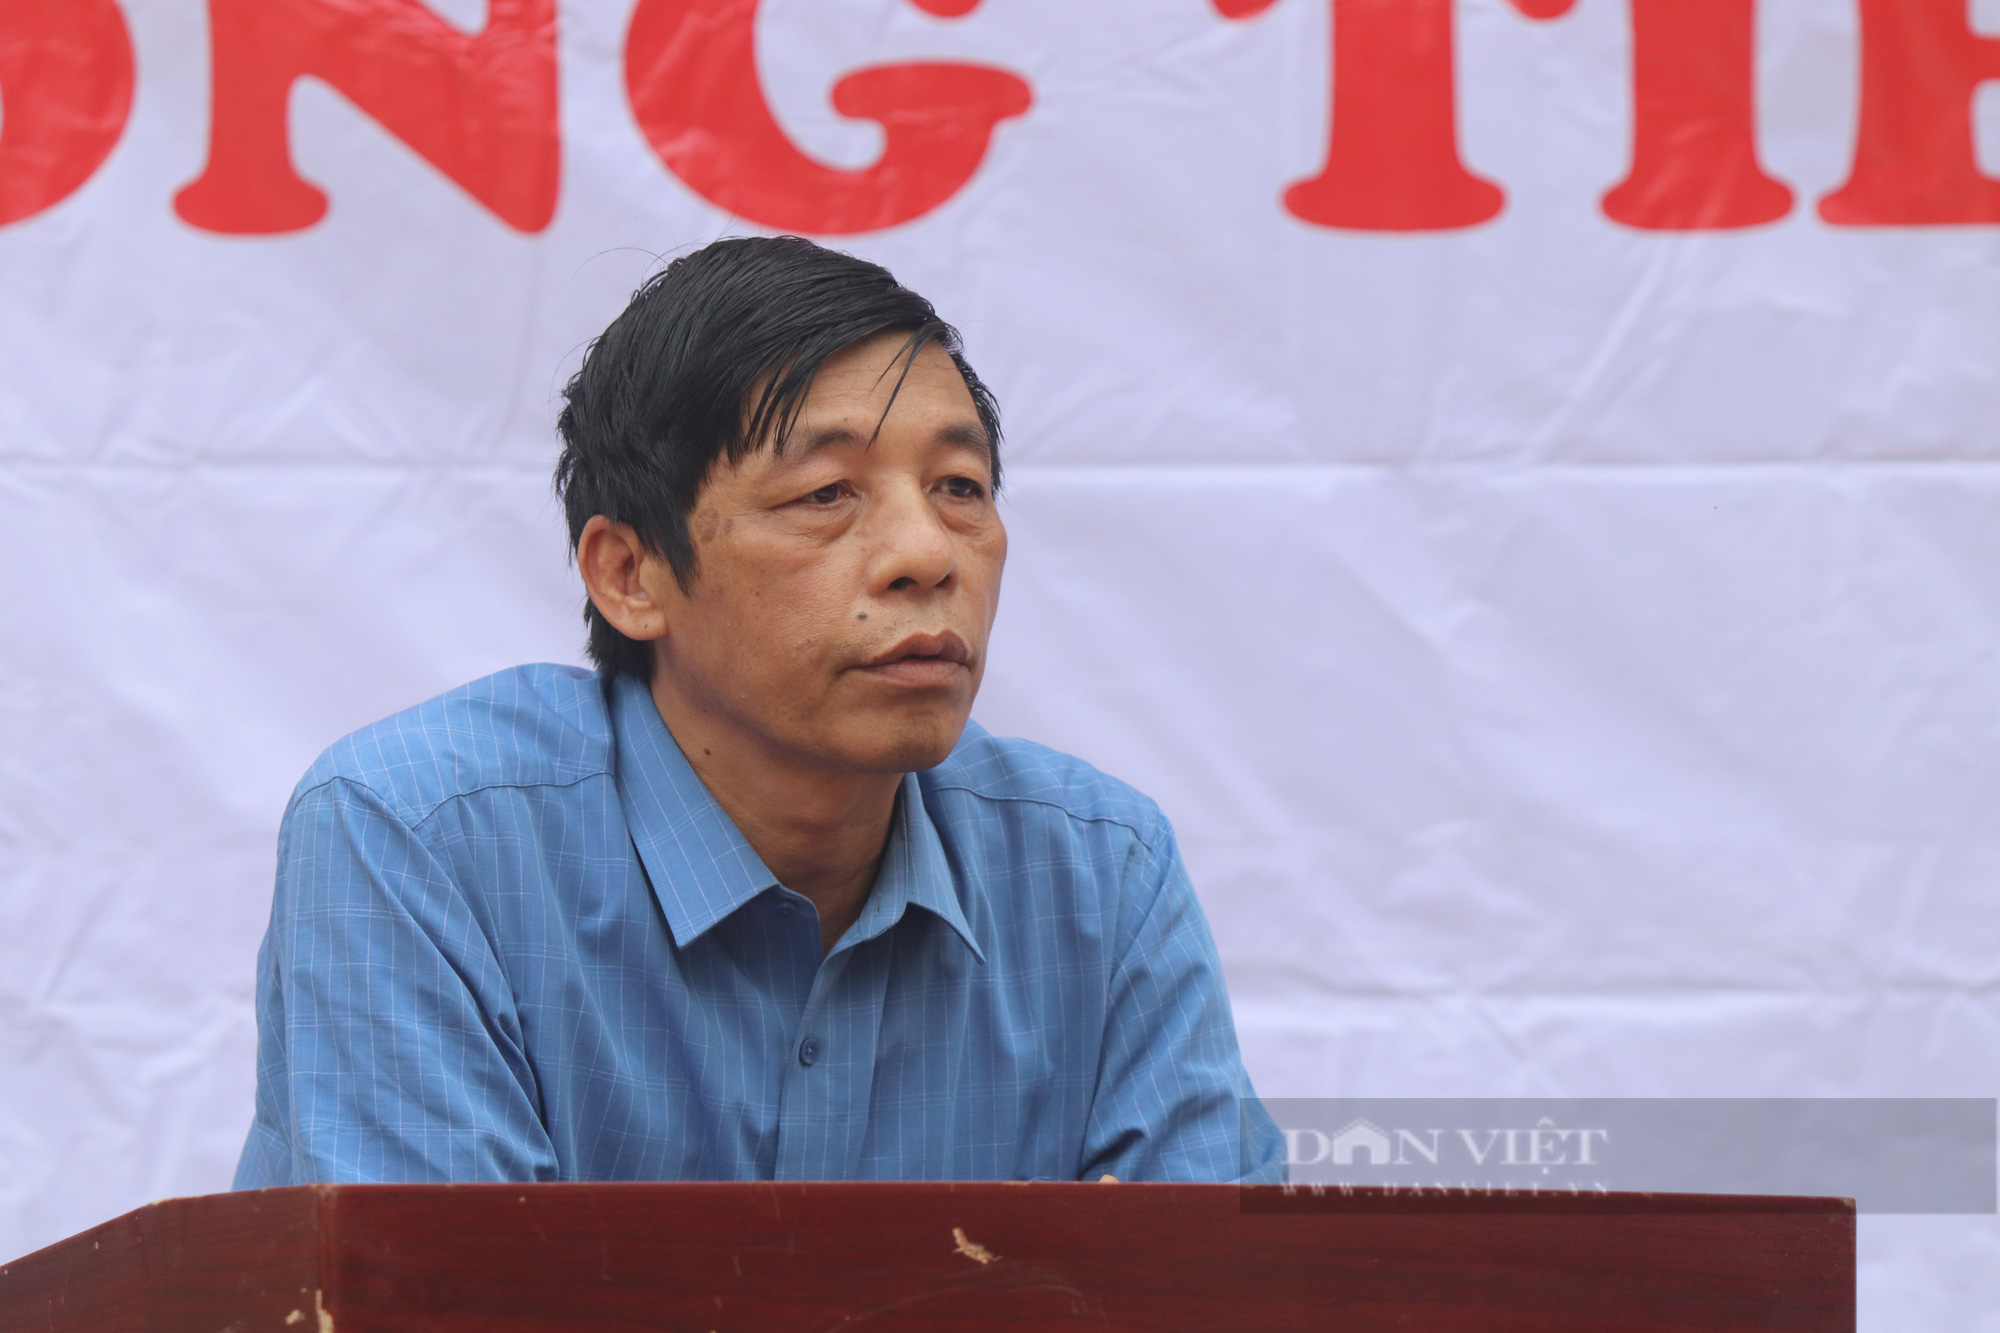 Báo NTNN/Dân Việt khởi công điểm trường mơ ước ở vùng quê nghèo Sơn La - Ảnh 4.